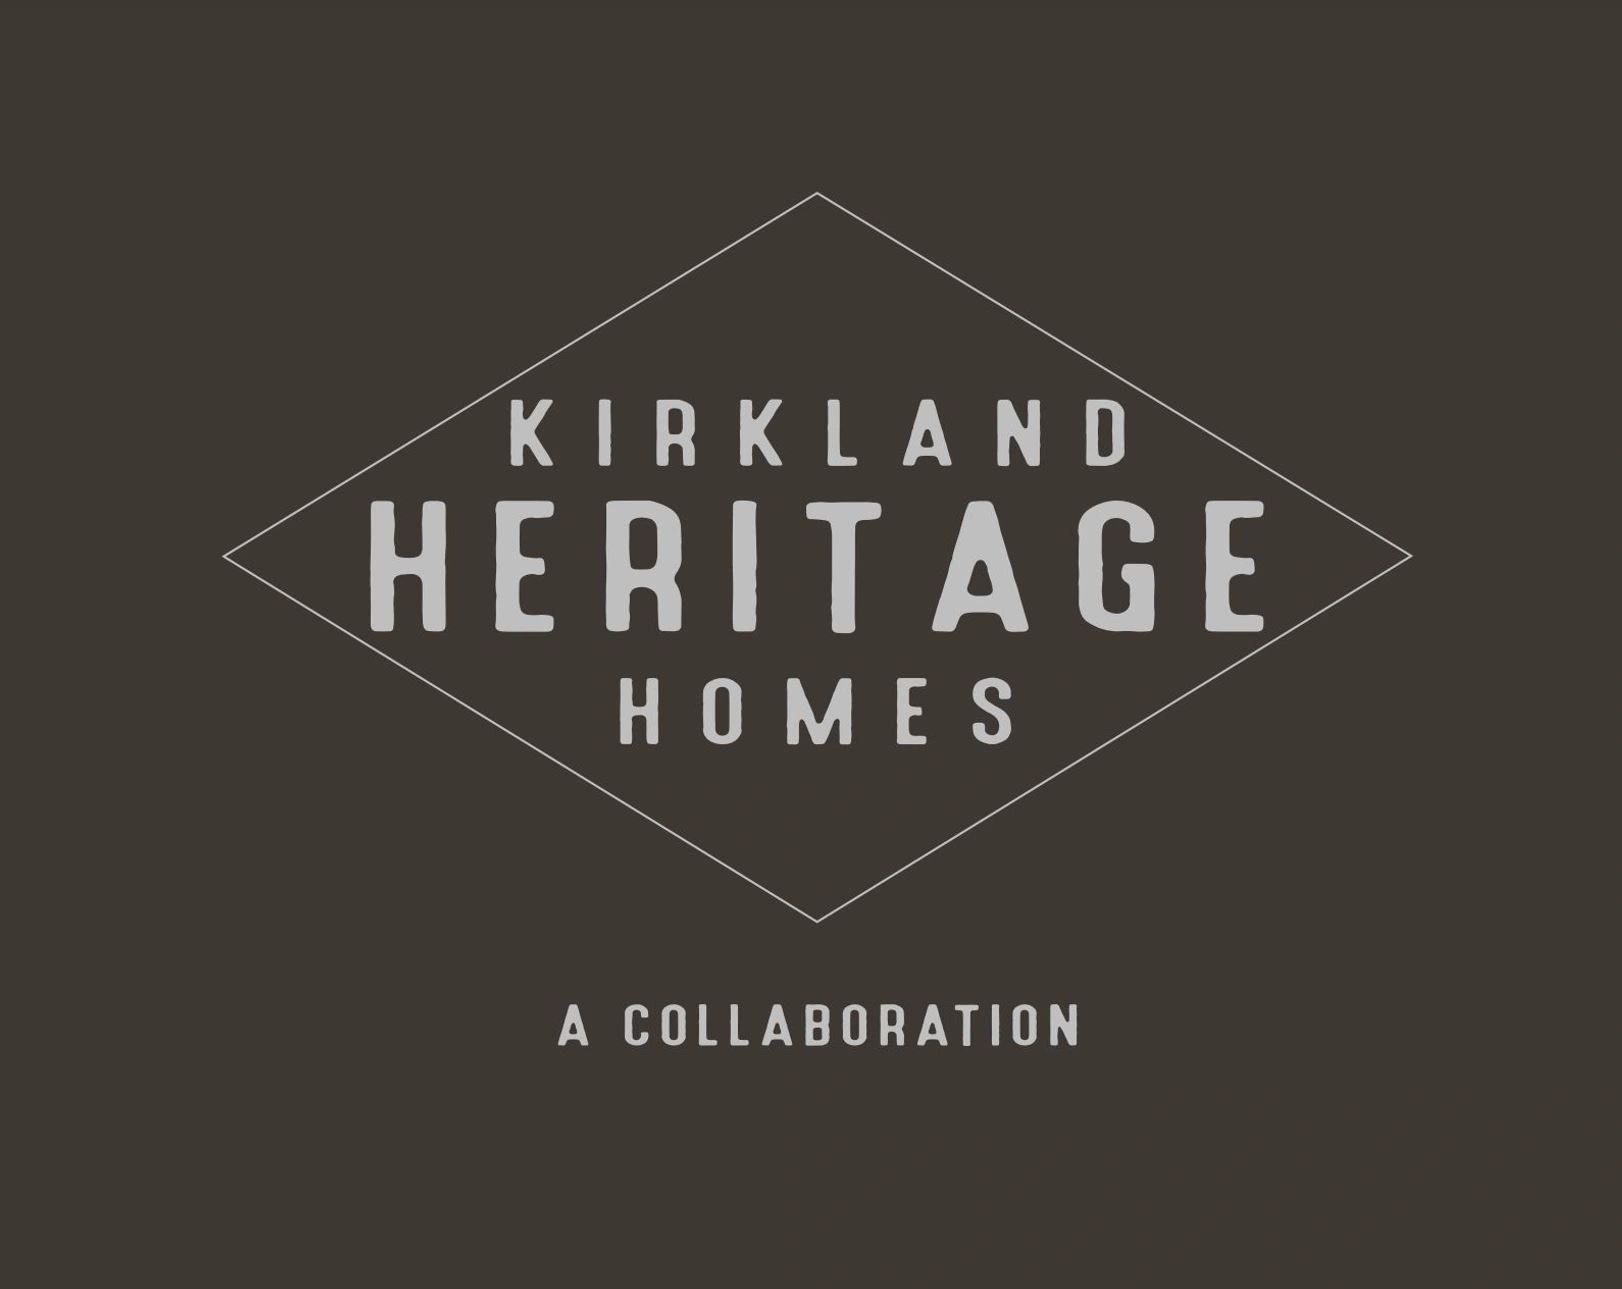 KIRKLAND HERITAGE HOMES